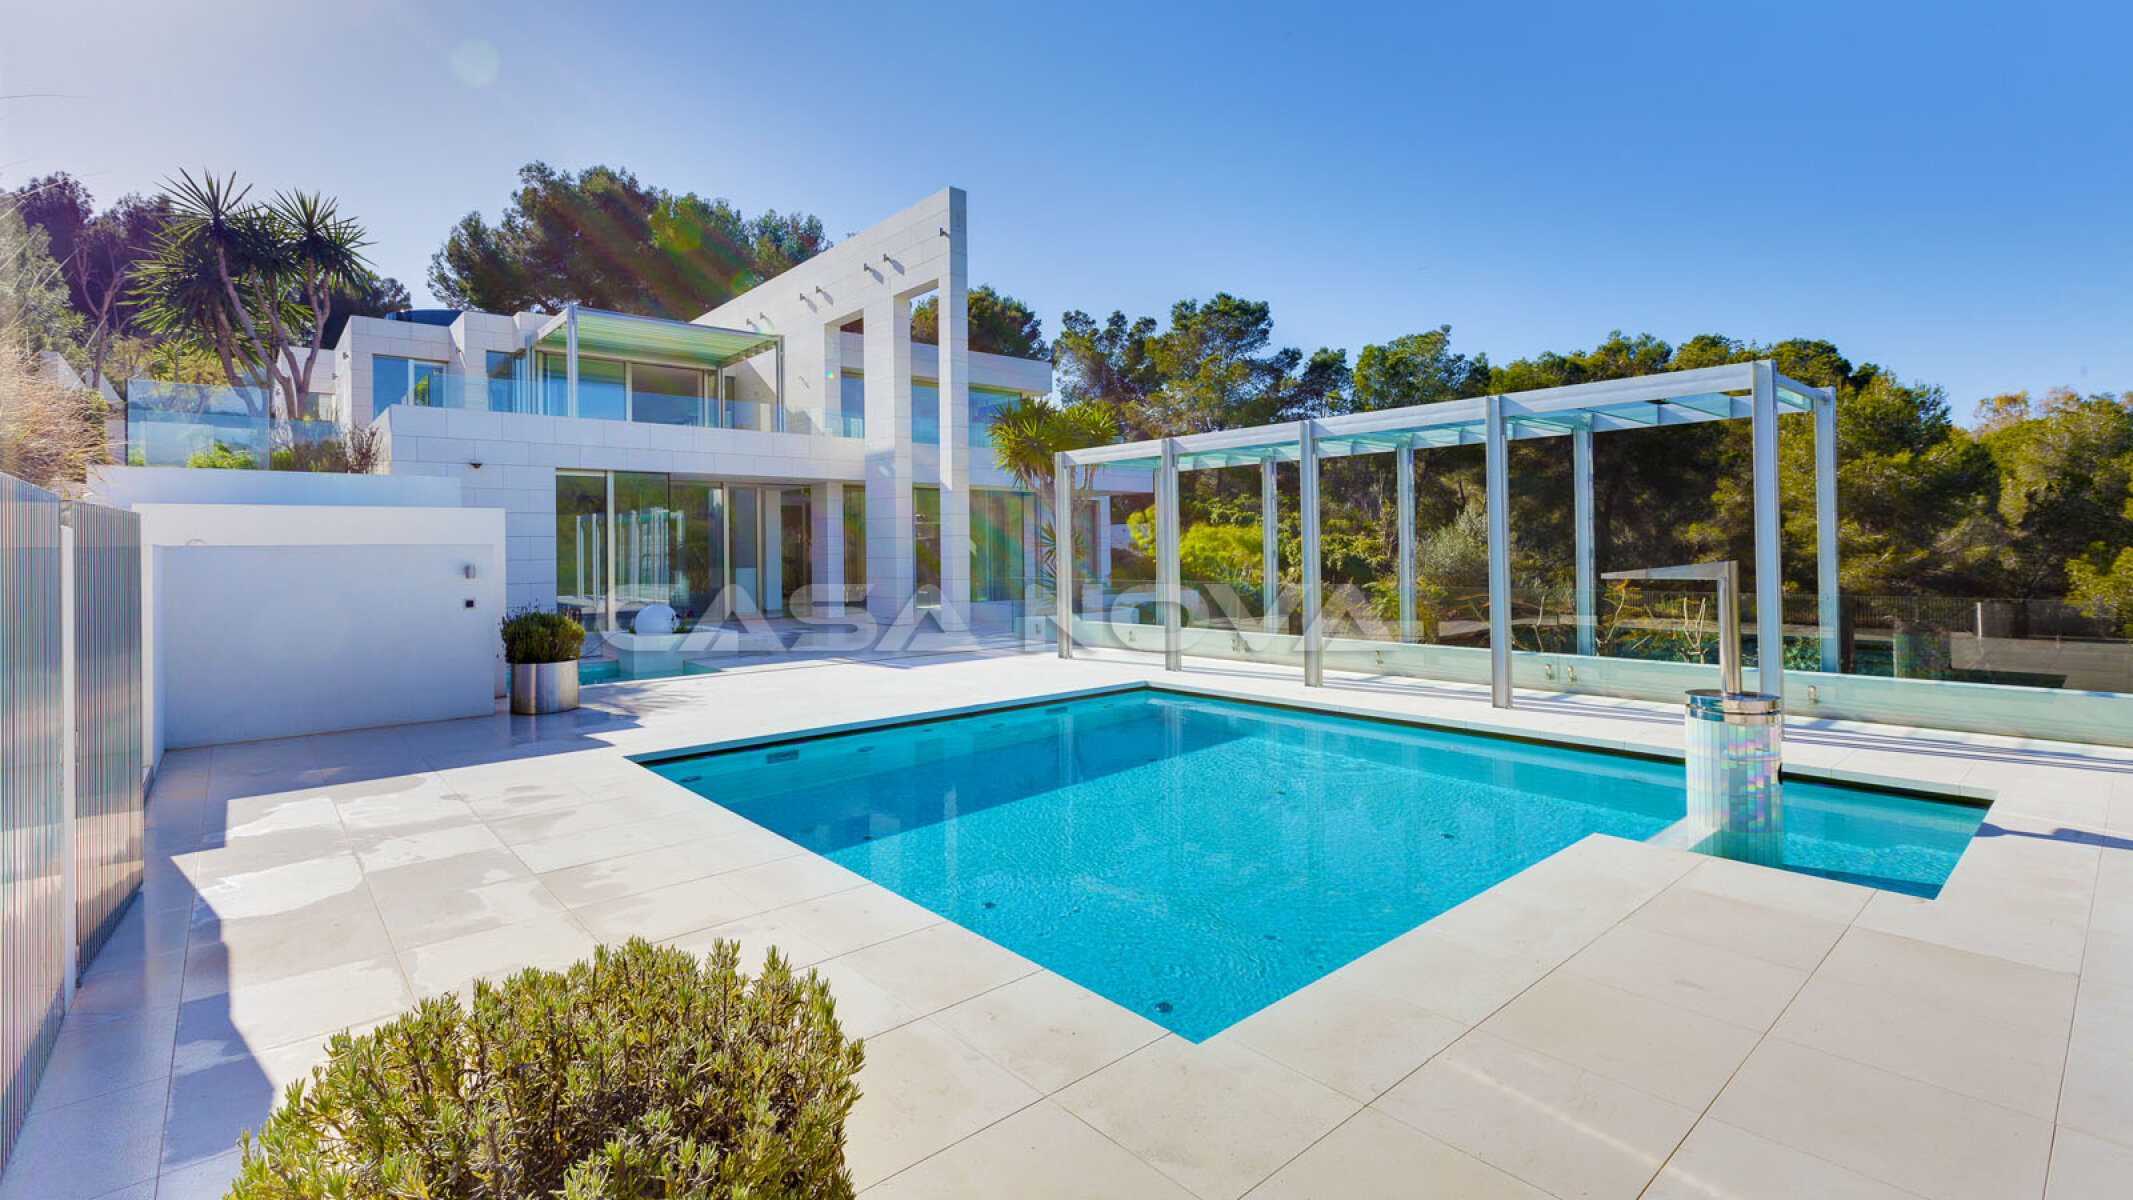 Premium Architect Villa Mallorca in minimalist style